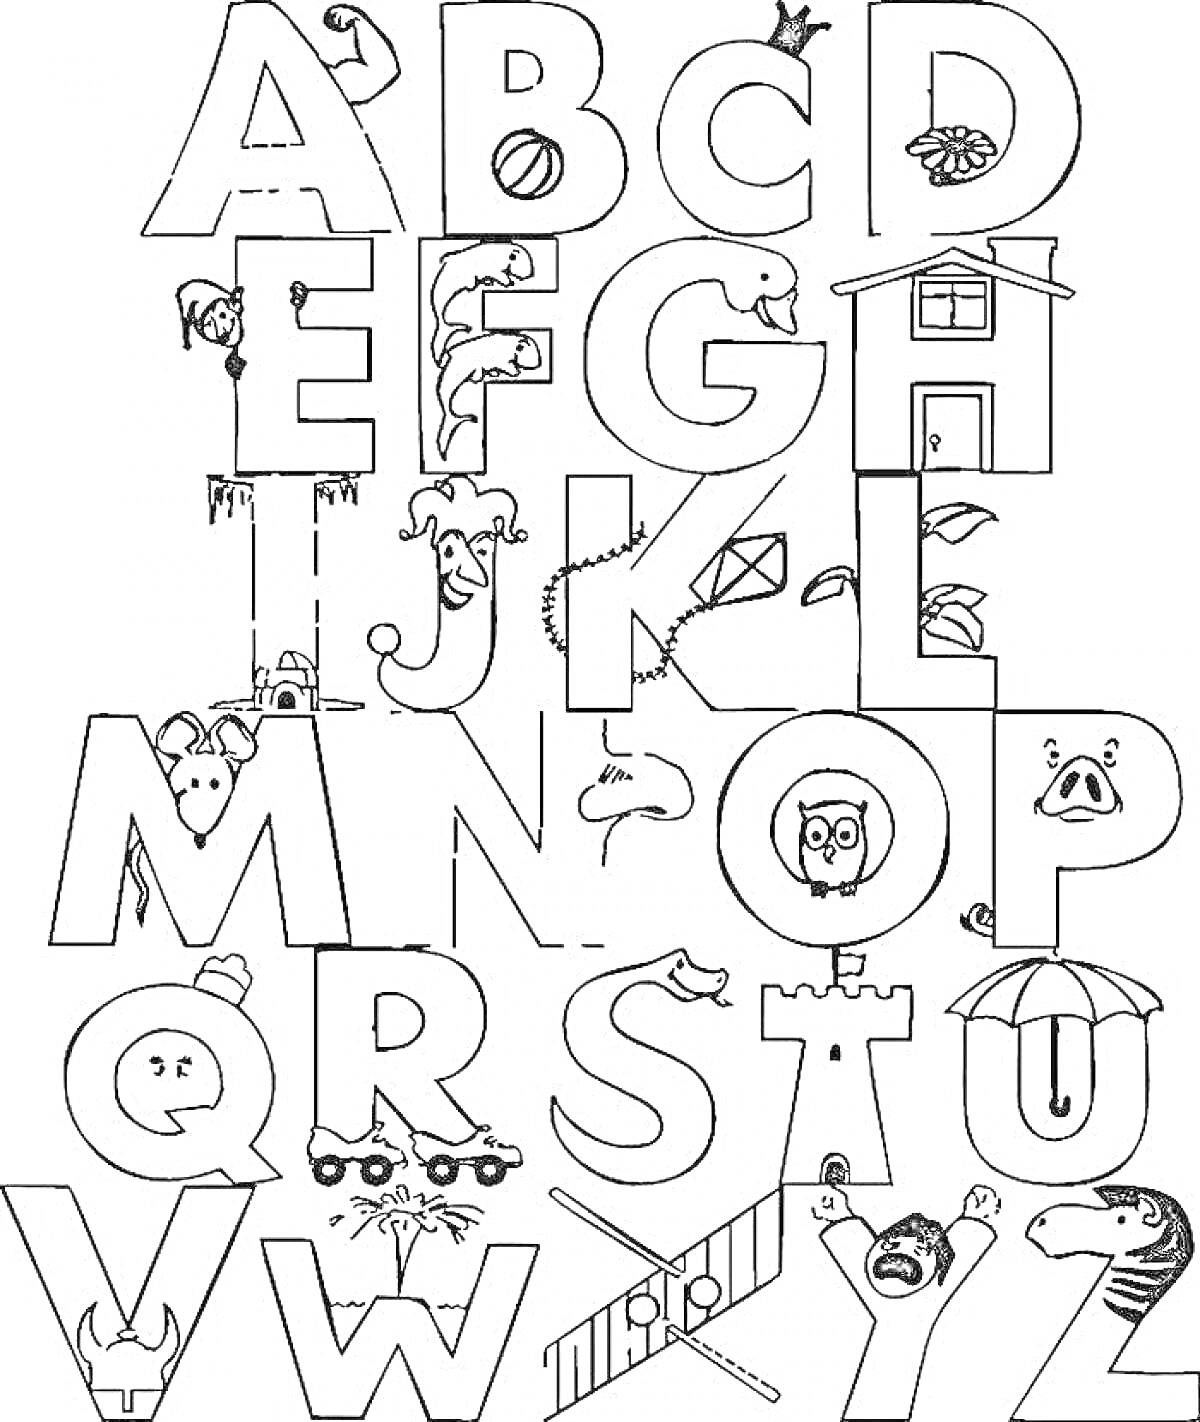 Раскраска Буквы с изображениями, соответствующими алфавиту: самолет (A), пчела (B), кошка (C), собака (D), яйцо (E), лягушка (F), коза (G), шляпа (H), мороженое (I), клоун (J), воздушный змей (K), лимон (L), мышь (M), гнездо (N), сова (O), свинья (P), королева (Q),